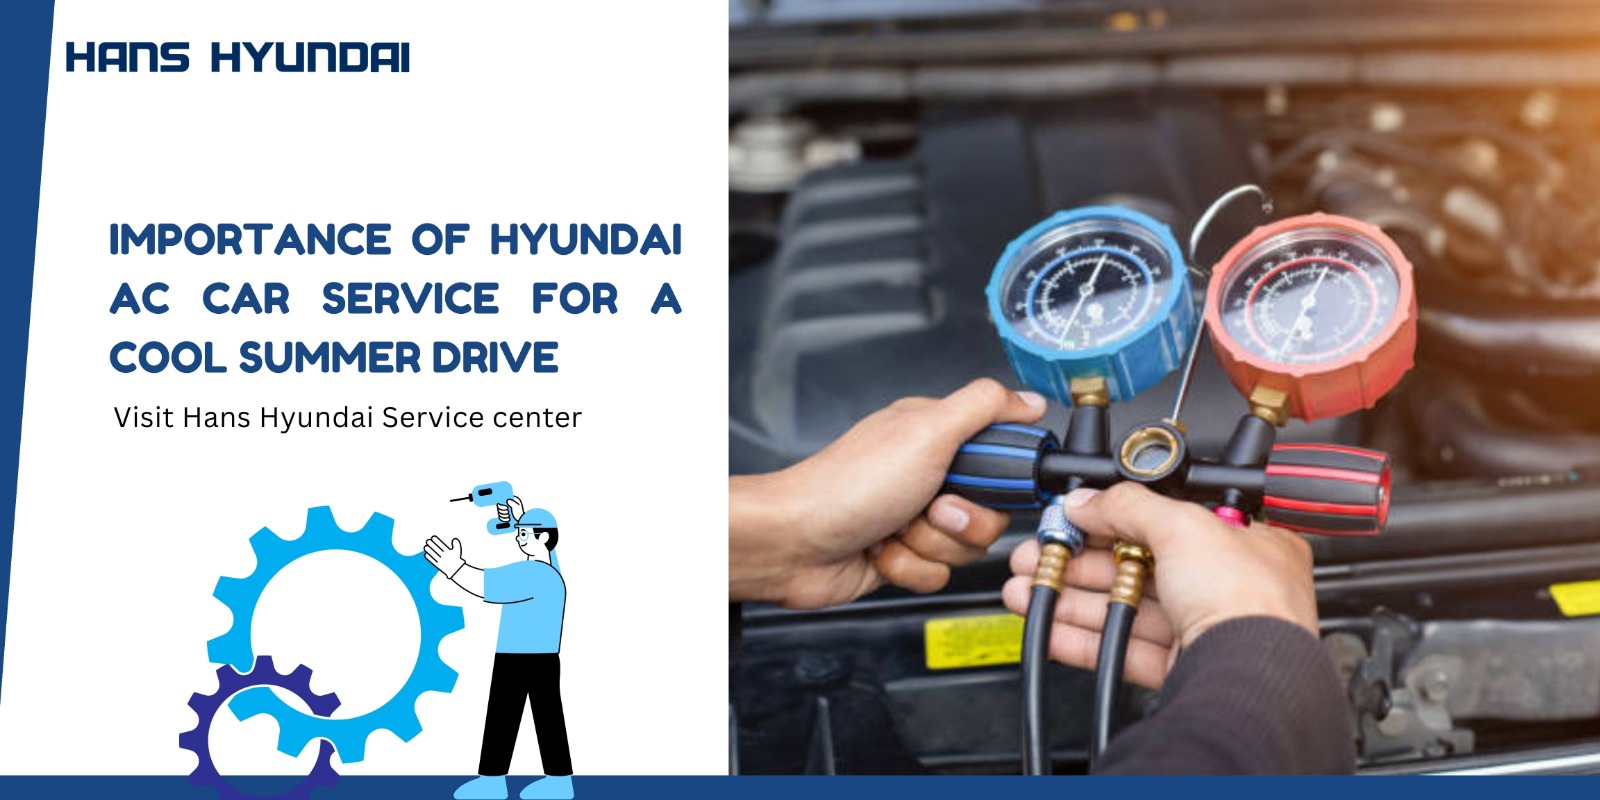 Hyundai AC Car Service